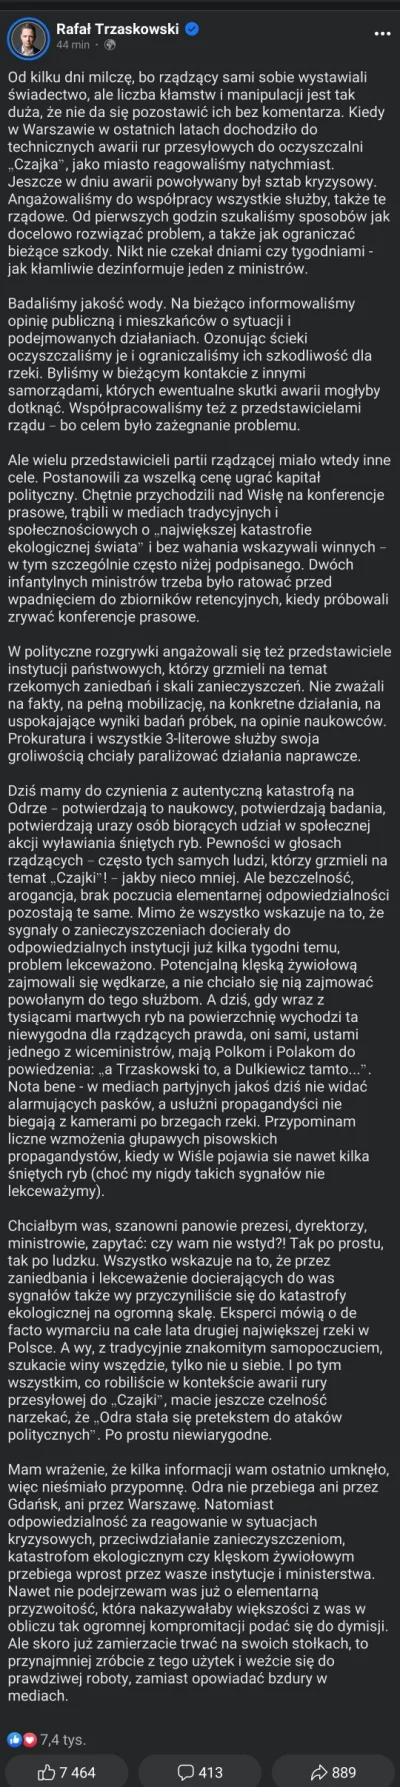 saakaszi - ZAORANE.

#neuropa #bekazprawakow #polska #polityka #bekazpisu #odra